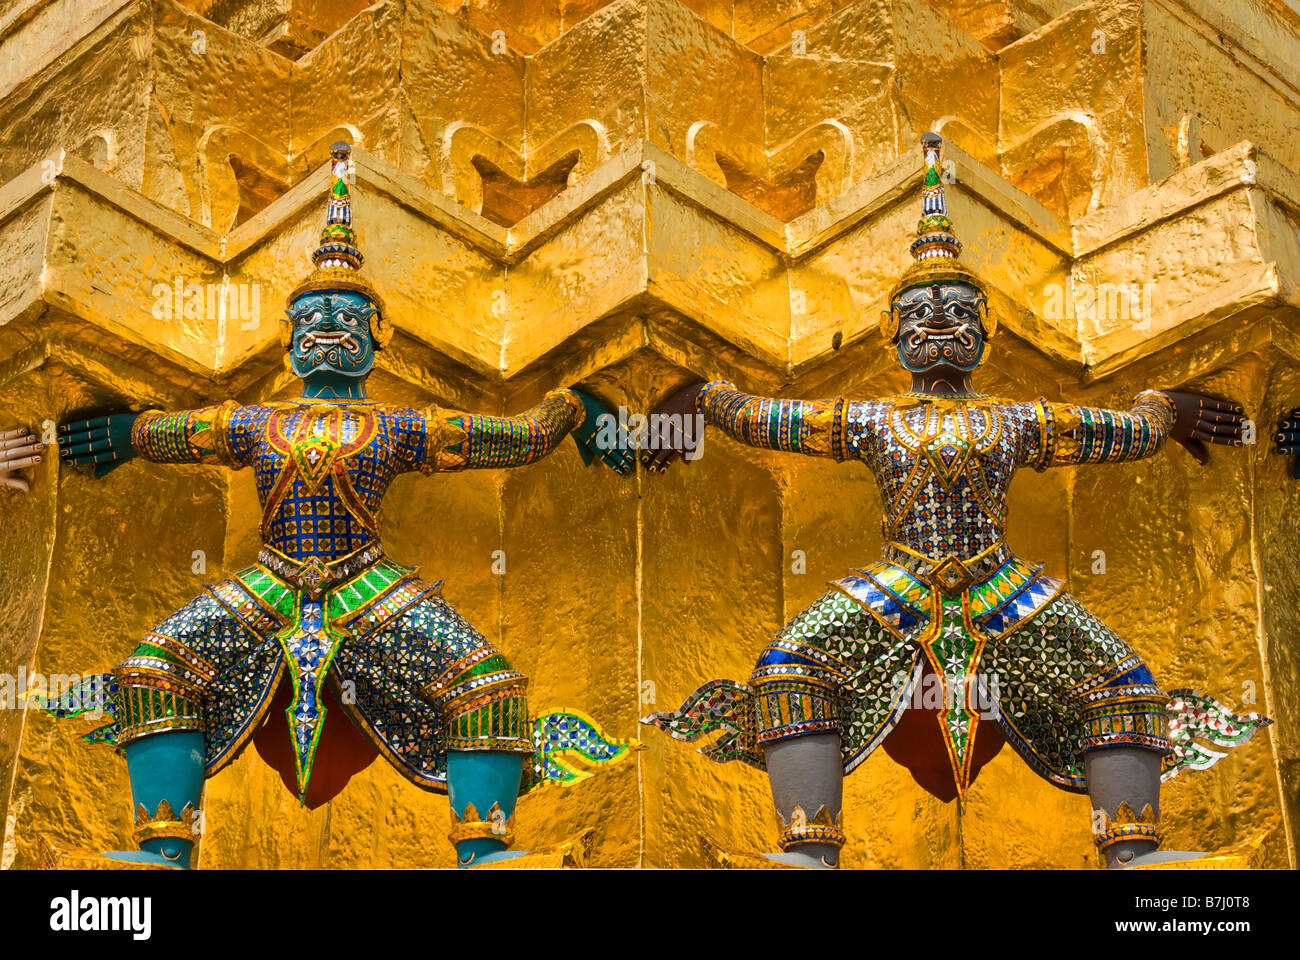 Yaksha démons mythiques soutenant un chedi doré - Wat Phra Kaew et le Grand Palais dans le centre de Bangkok en Thaïlande Banque D'Images